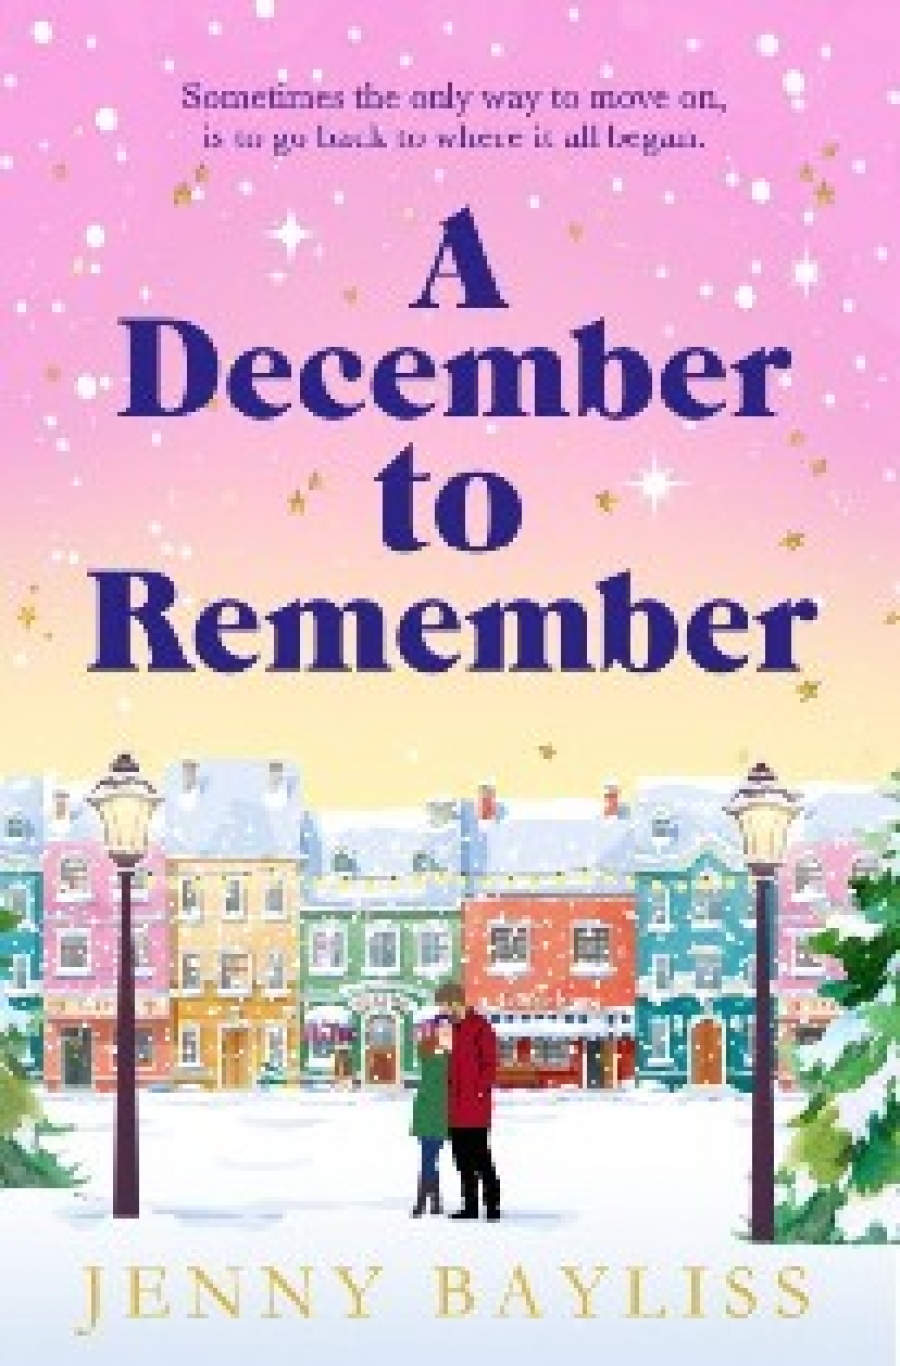 Jenny, Bayliss December to remember 